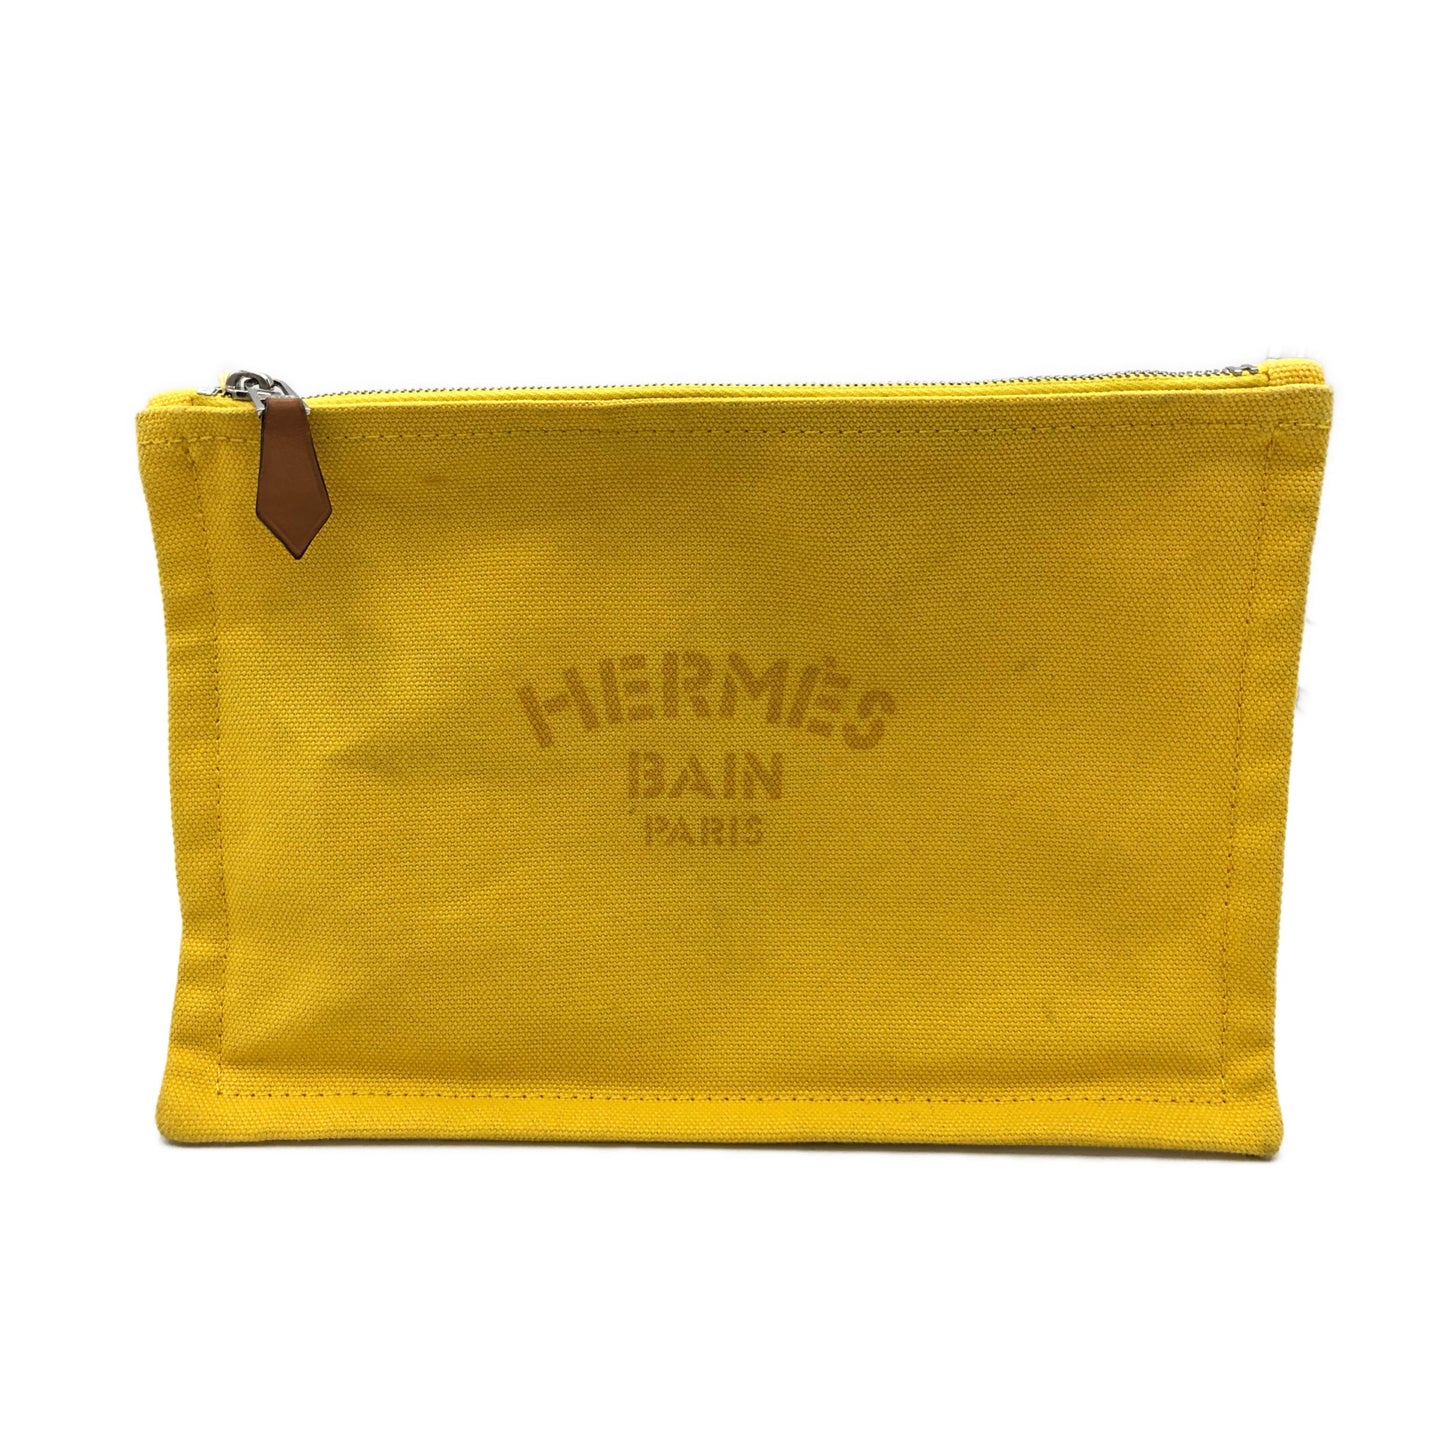 Hermès bain pochette gialla tessuto small usata